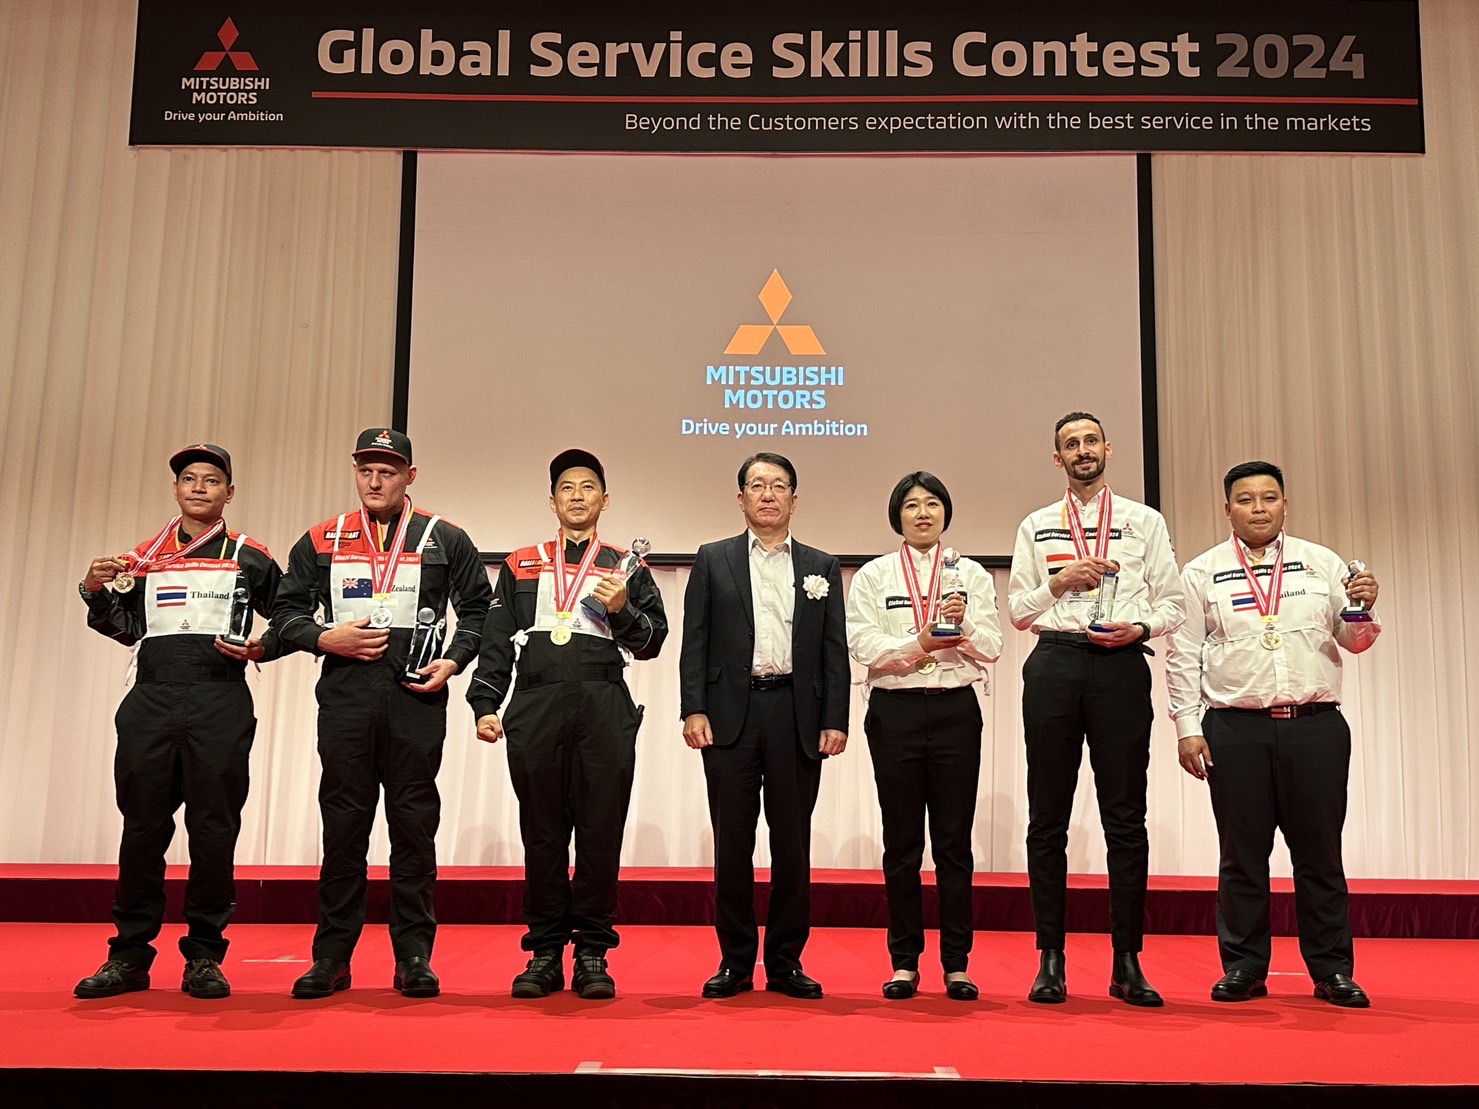 中華三菱服務技術為世界最頂尖水準 多次拿到冠軍.jpg